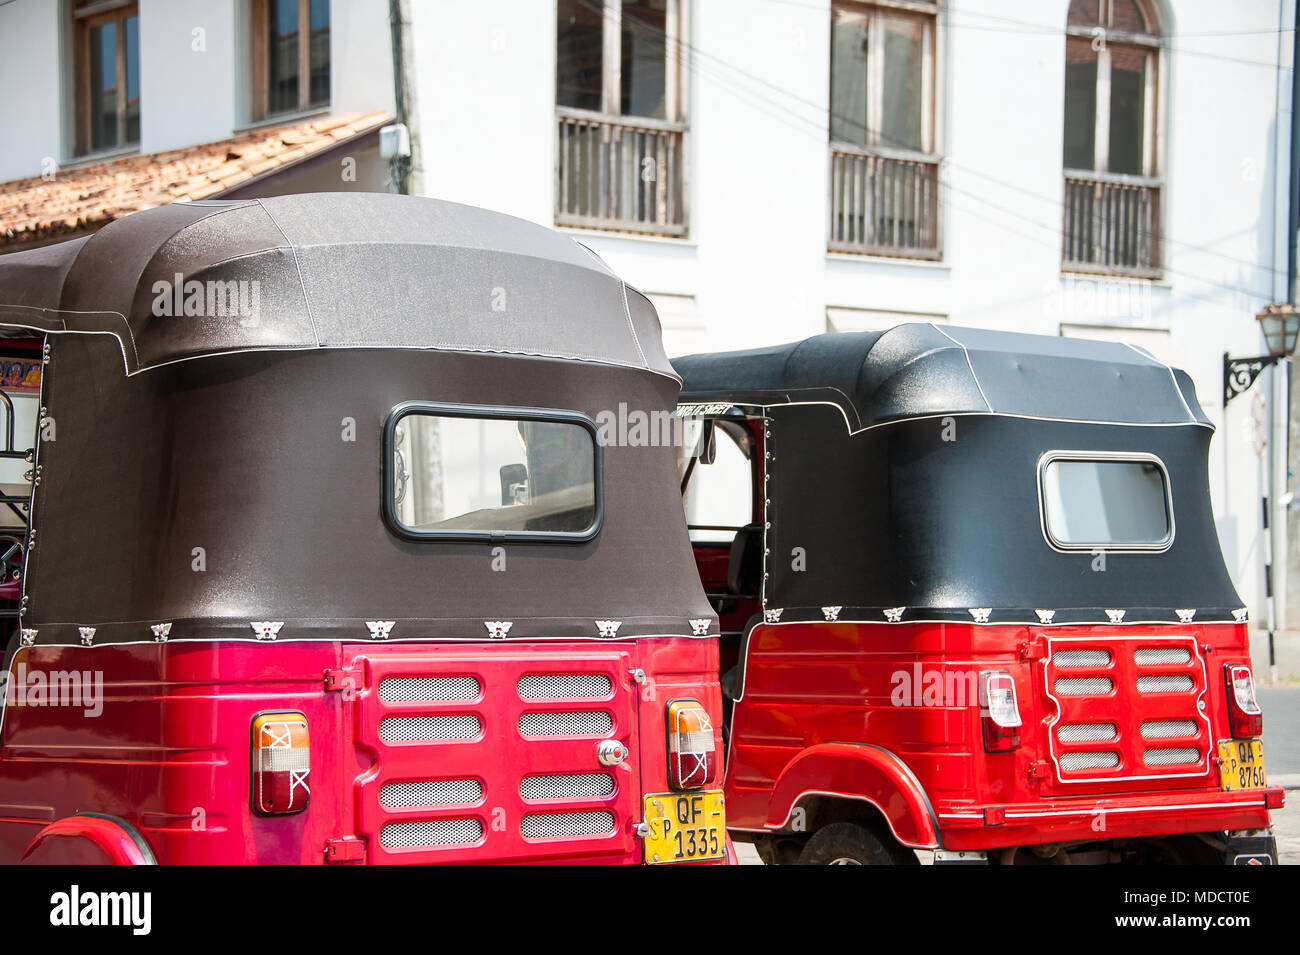 Ansicht der Rückseite des roten und schwarzen Tuktuk Taxis, in einem typischen Straßenbild, Galle, Sri Lanka Stockfoto